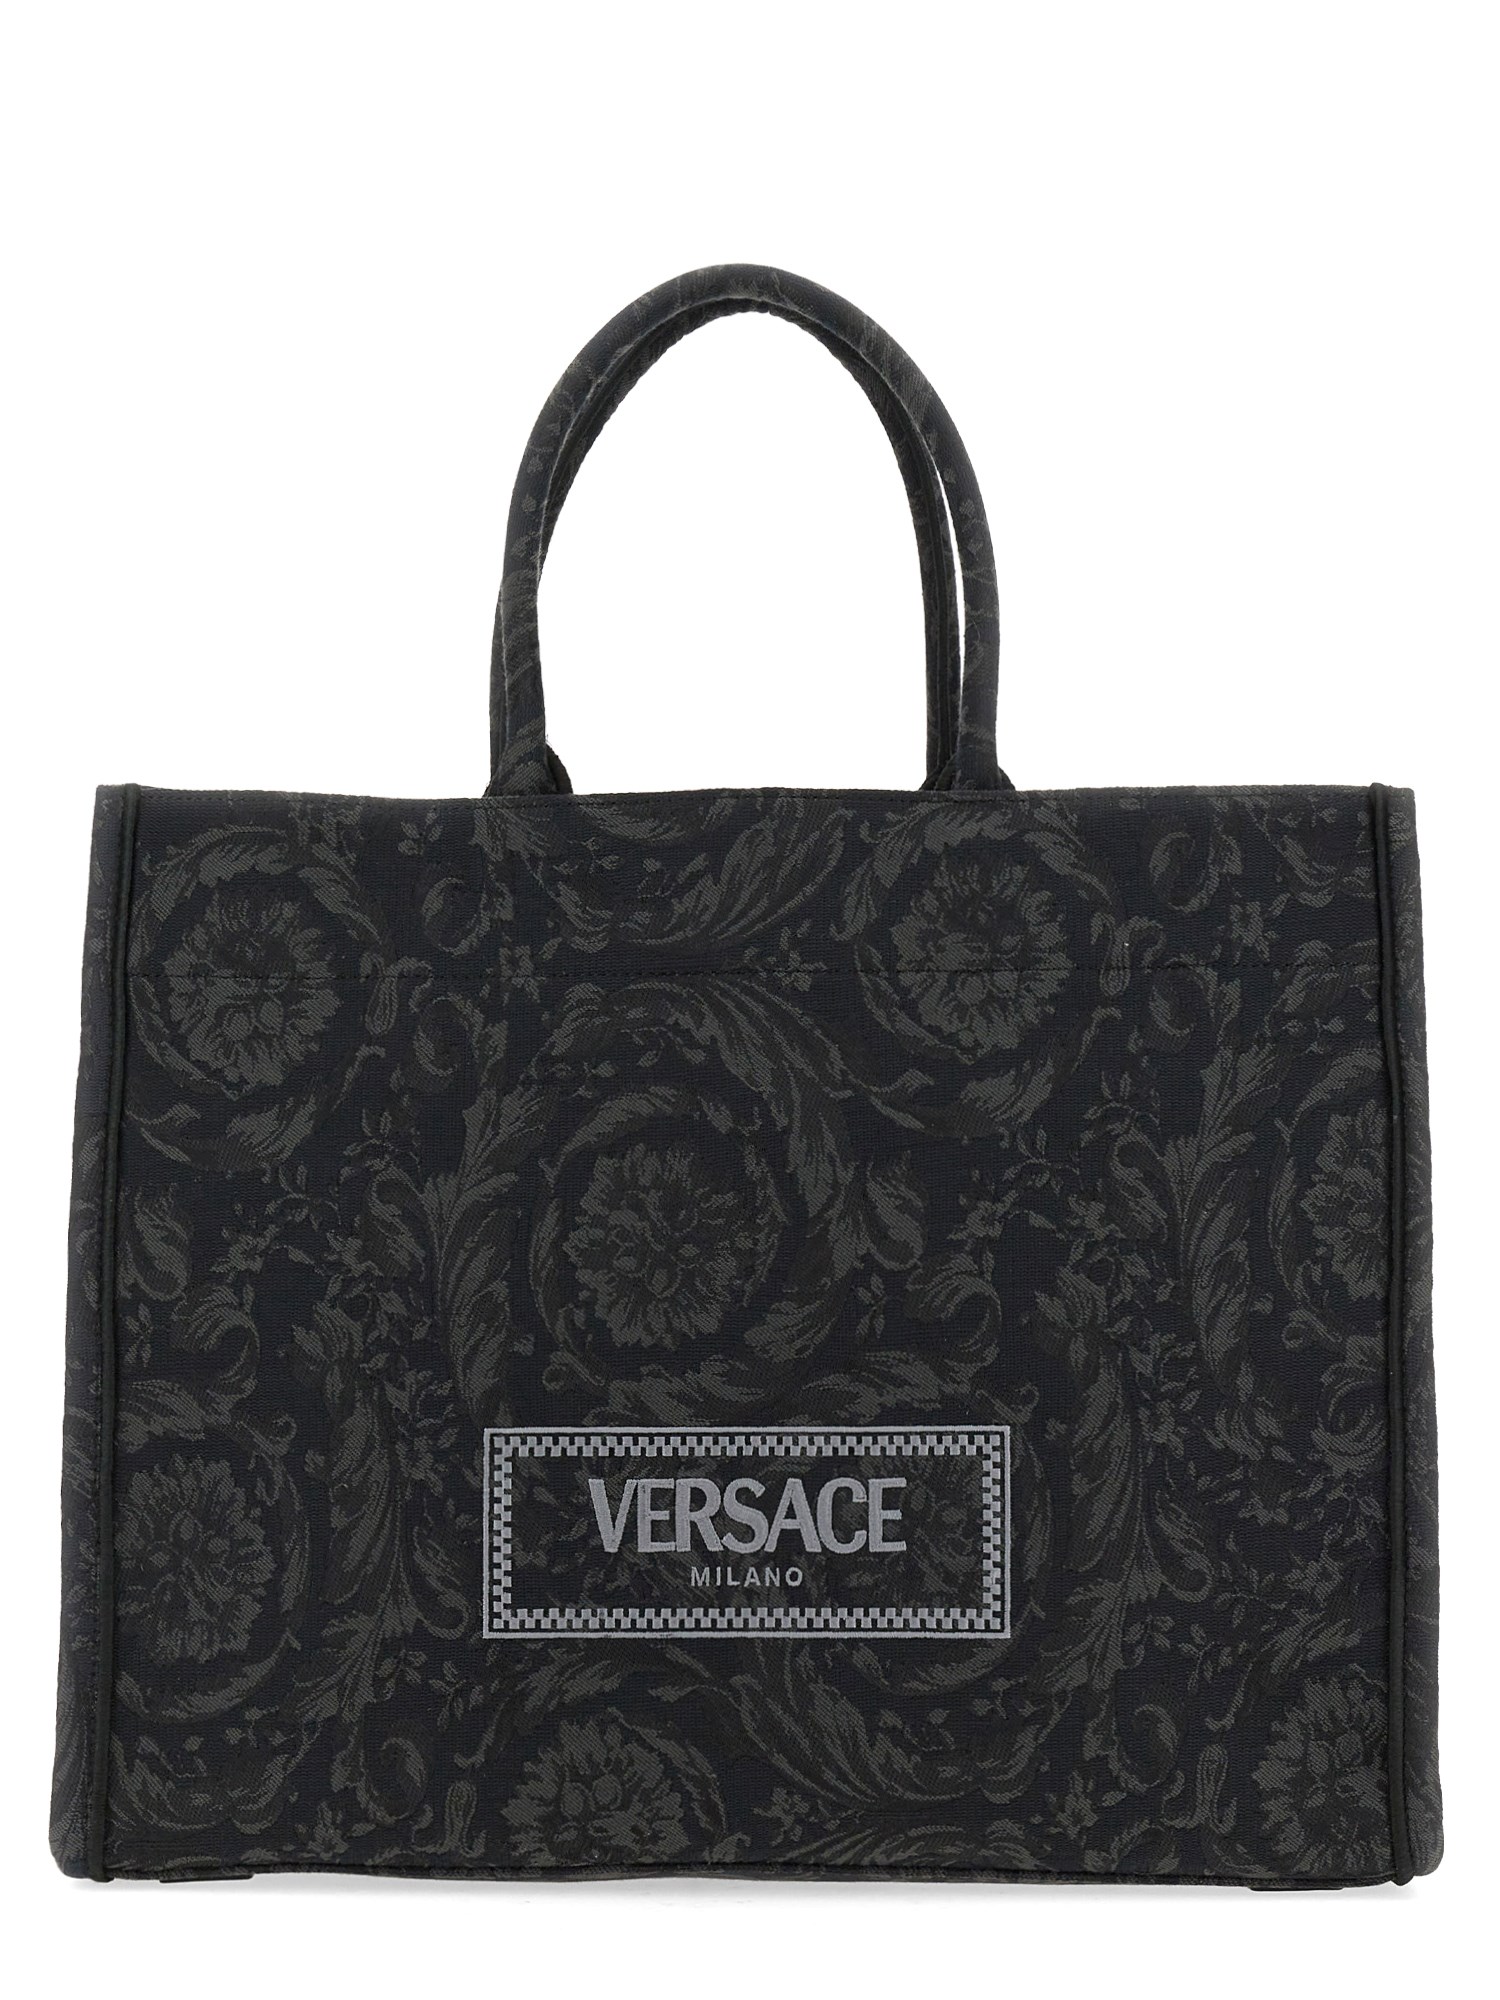 versace large shopper bag 